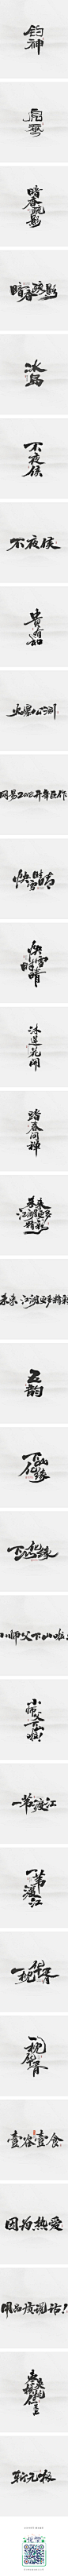 斯科-2018年部分商写书法字案例记一-字体传奇网-中国首个字体品牌设计师交流网,斯科-2018年部分商写书法字案例记一-字体传奇网-中国首个字体品牌设计师交流网